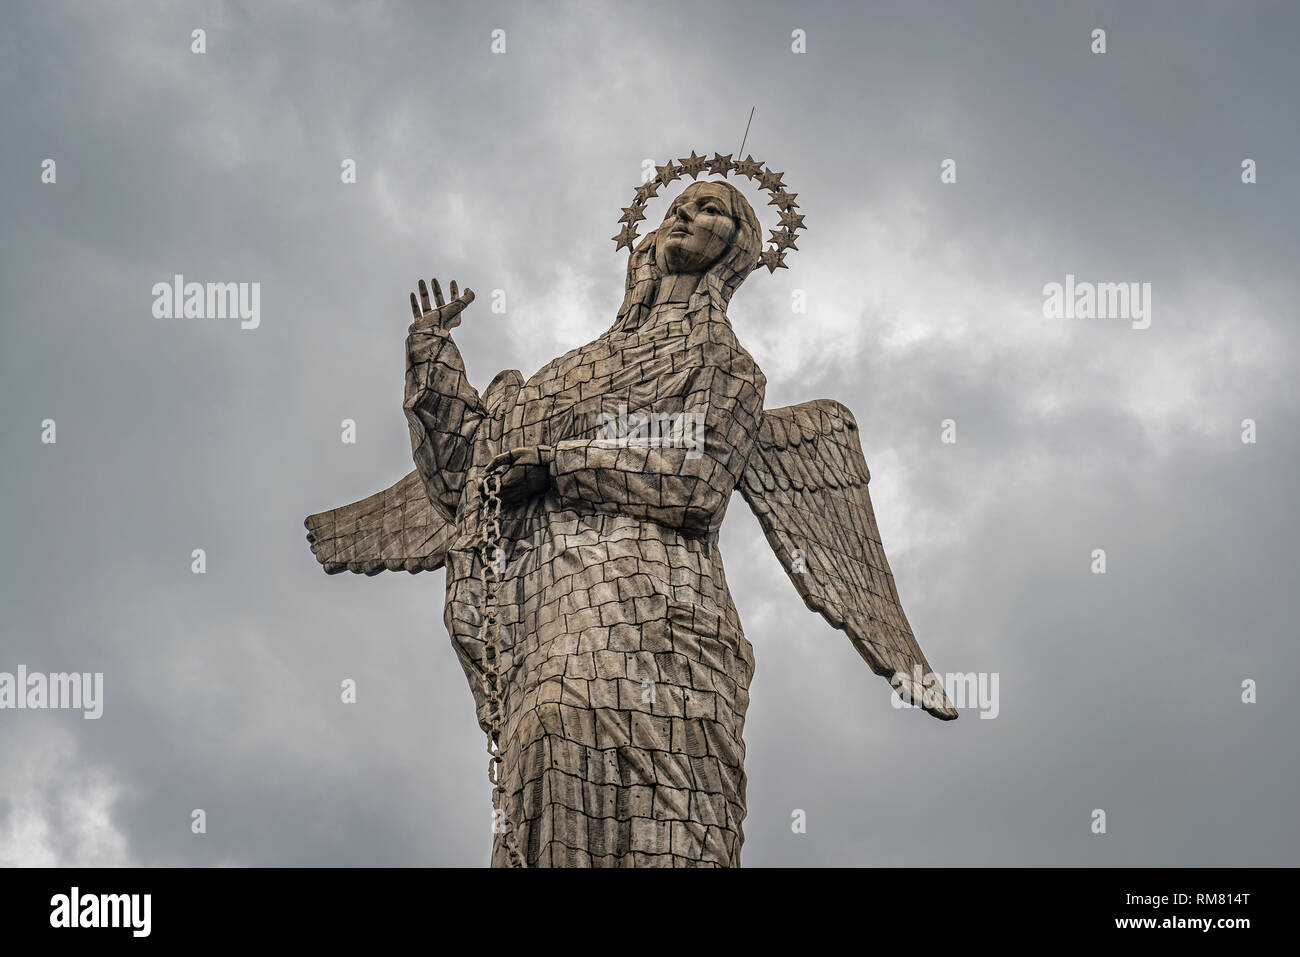 La statue de la Vierge de Quito, également connu sous le nom de la vierge ou vierge ailée apocalyptiques, dans le centre-ville de Quito sur la colline Panecillo, en Équateur. Banque D'Images